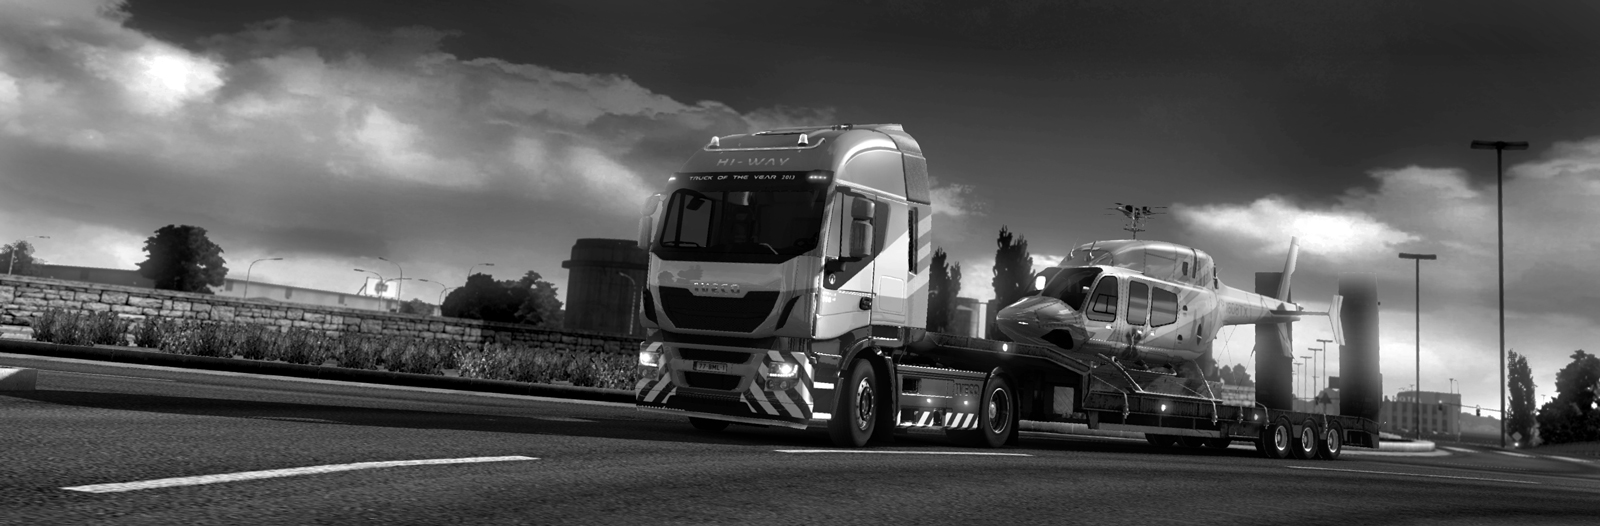 euro truck simulator 2 crack 1.11.1